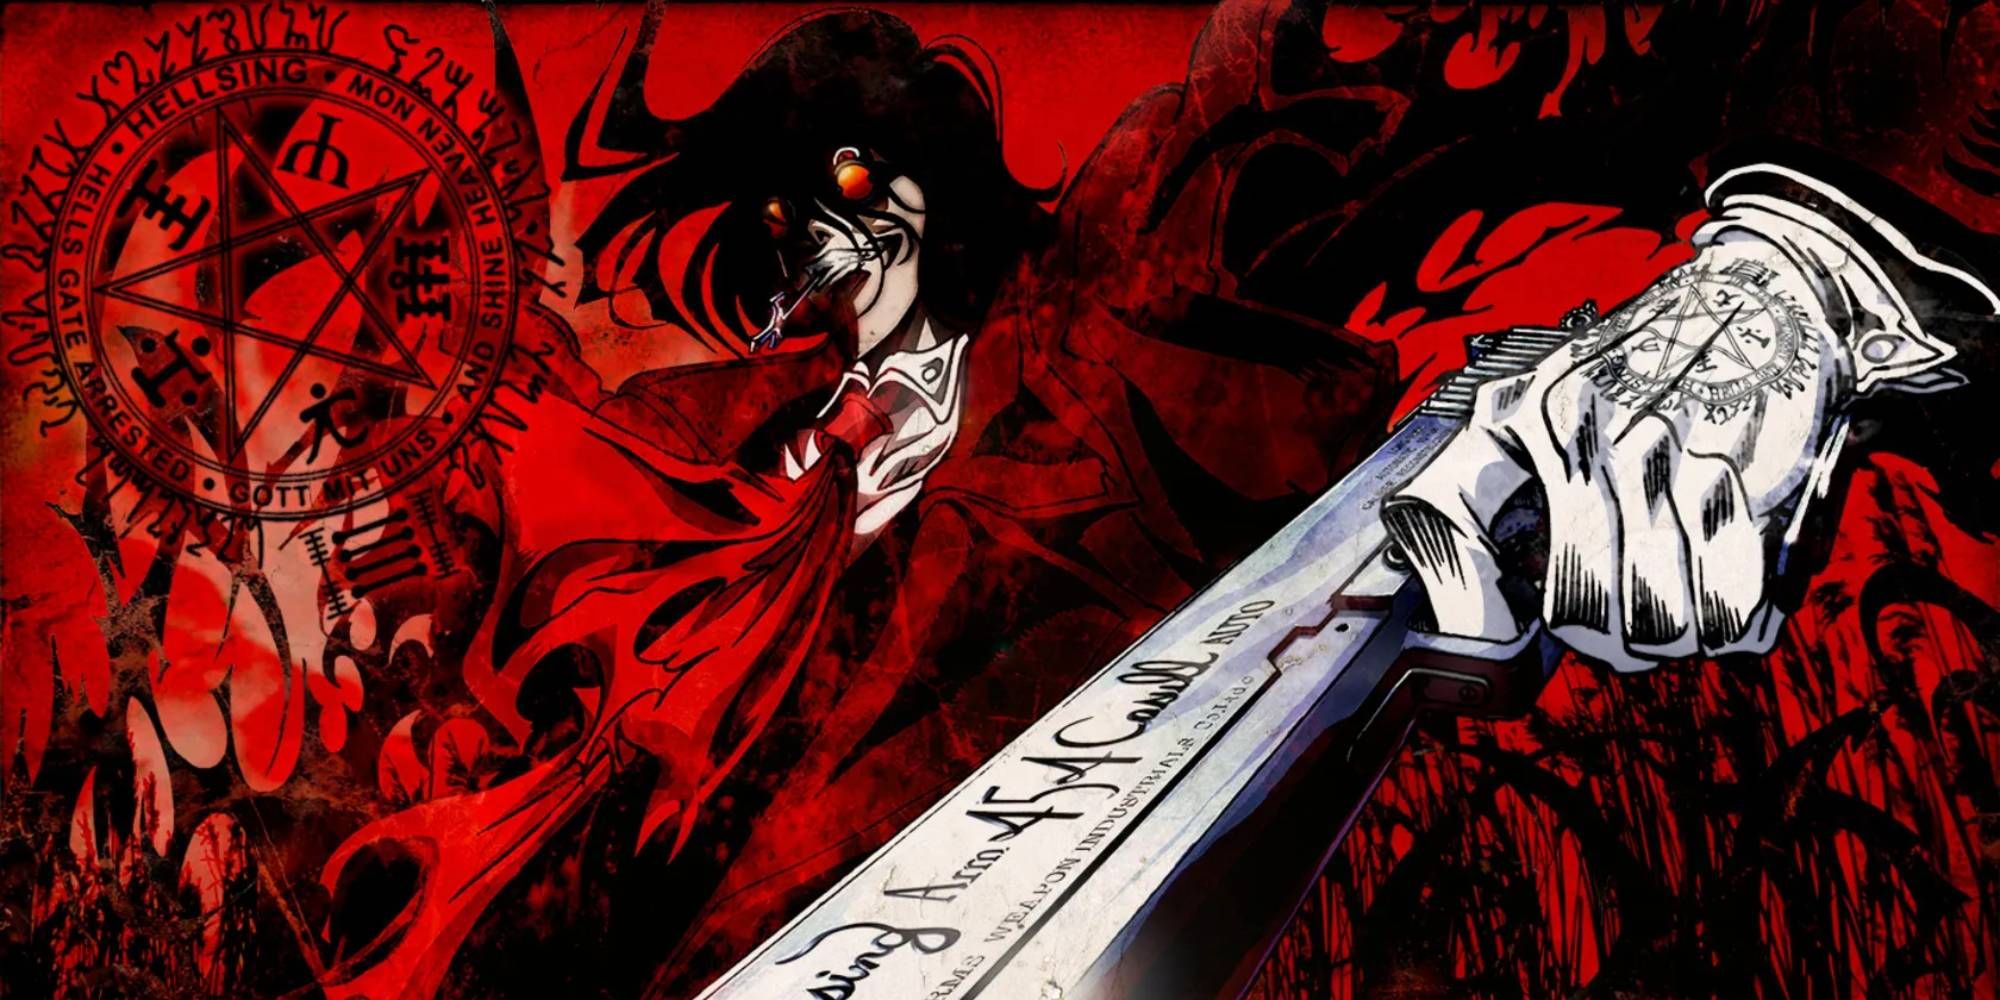 GR Anime Review: Hellsing Ultimate 